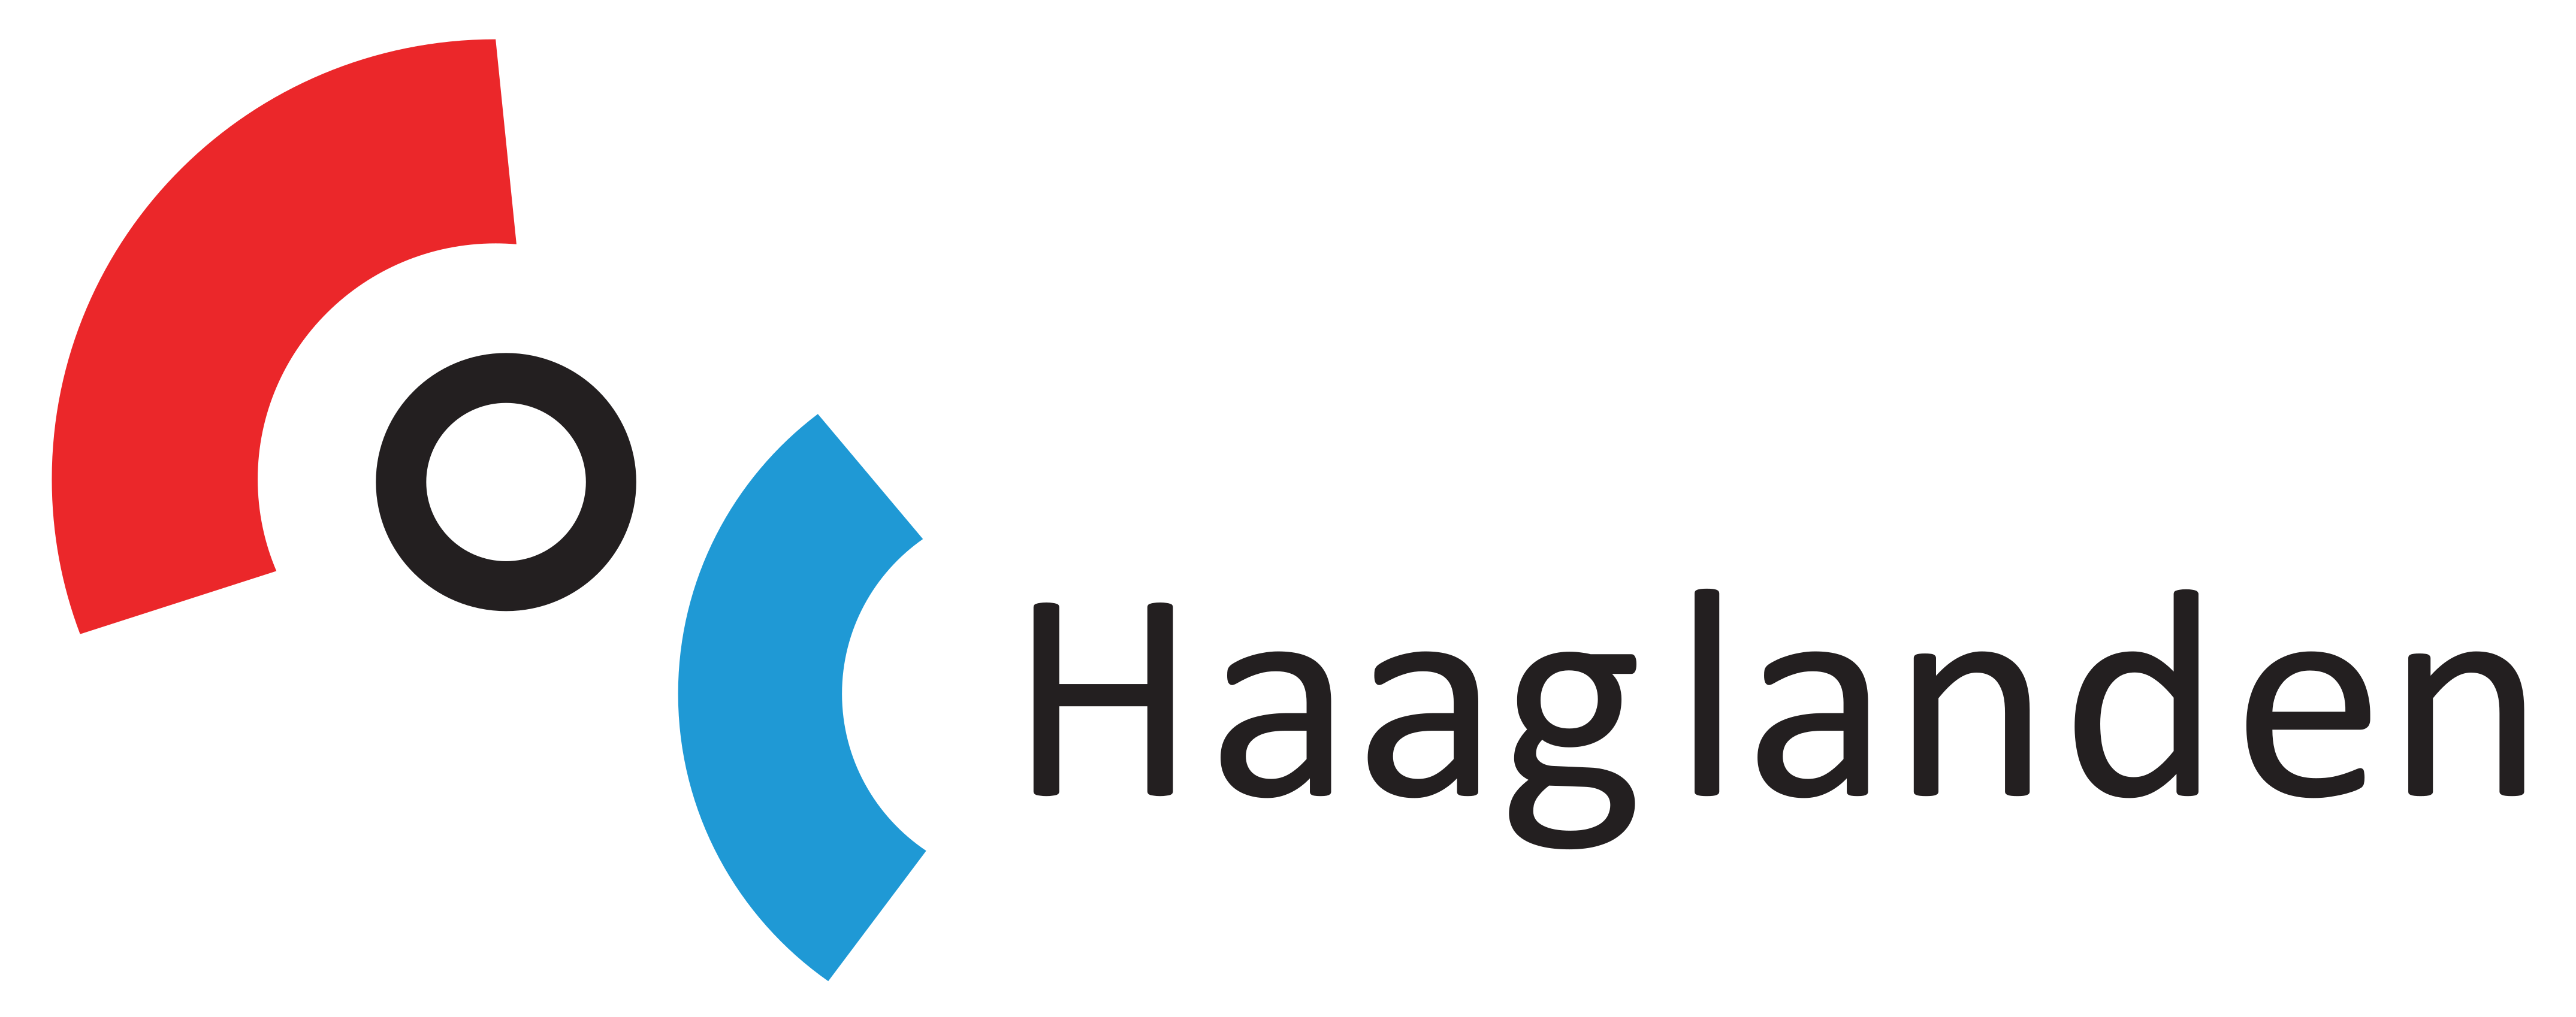 COC Haaglanden logo